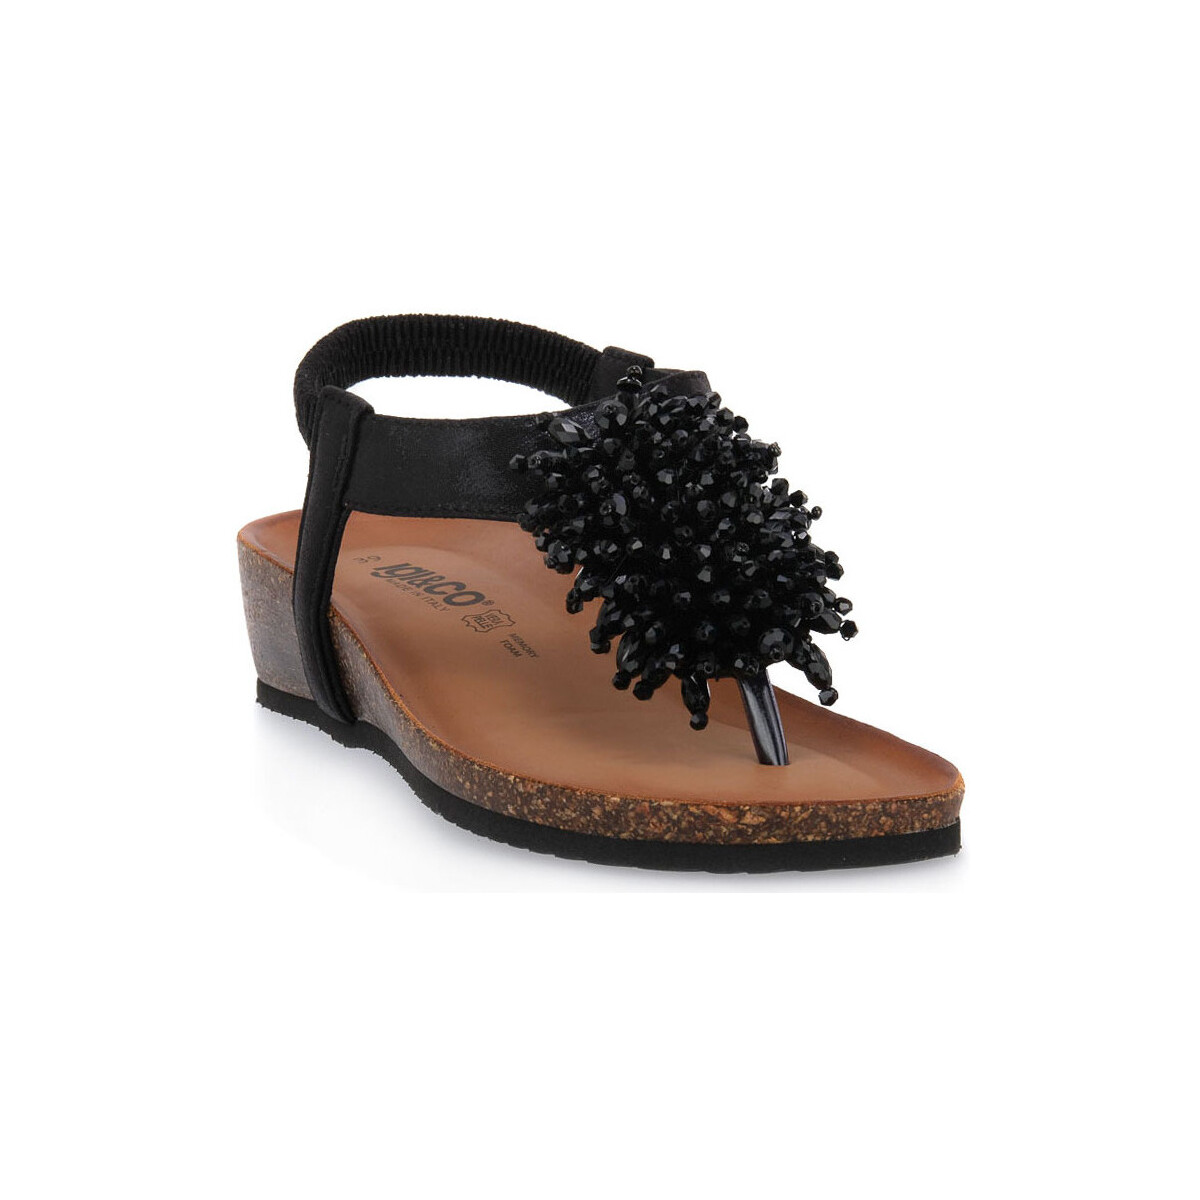 Zapatos Mujer Multideporte IgI&CO ANTIBES NERO Negro